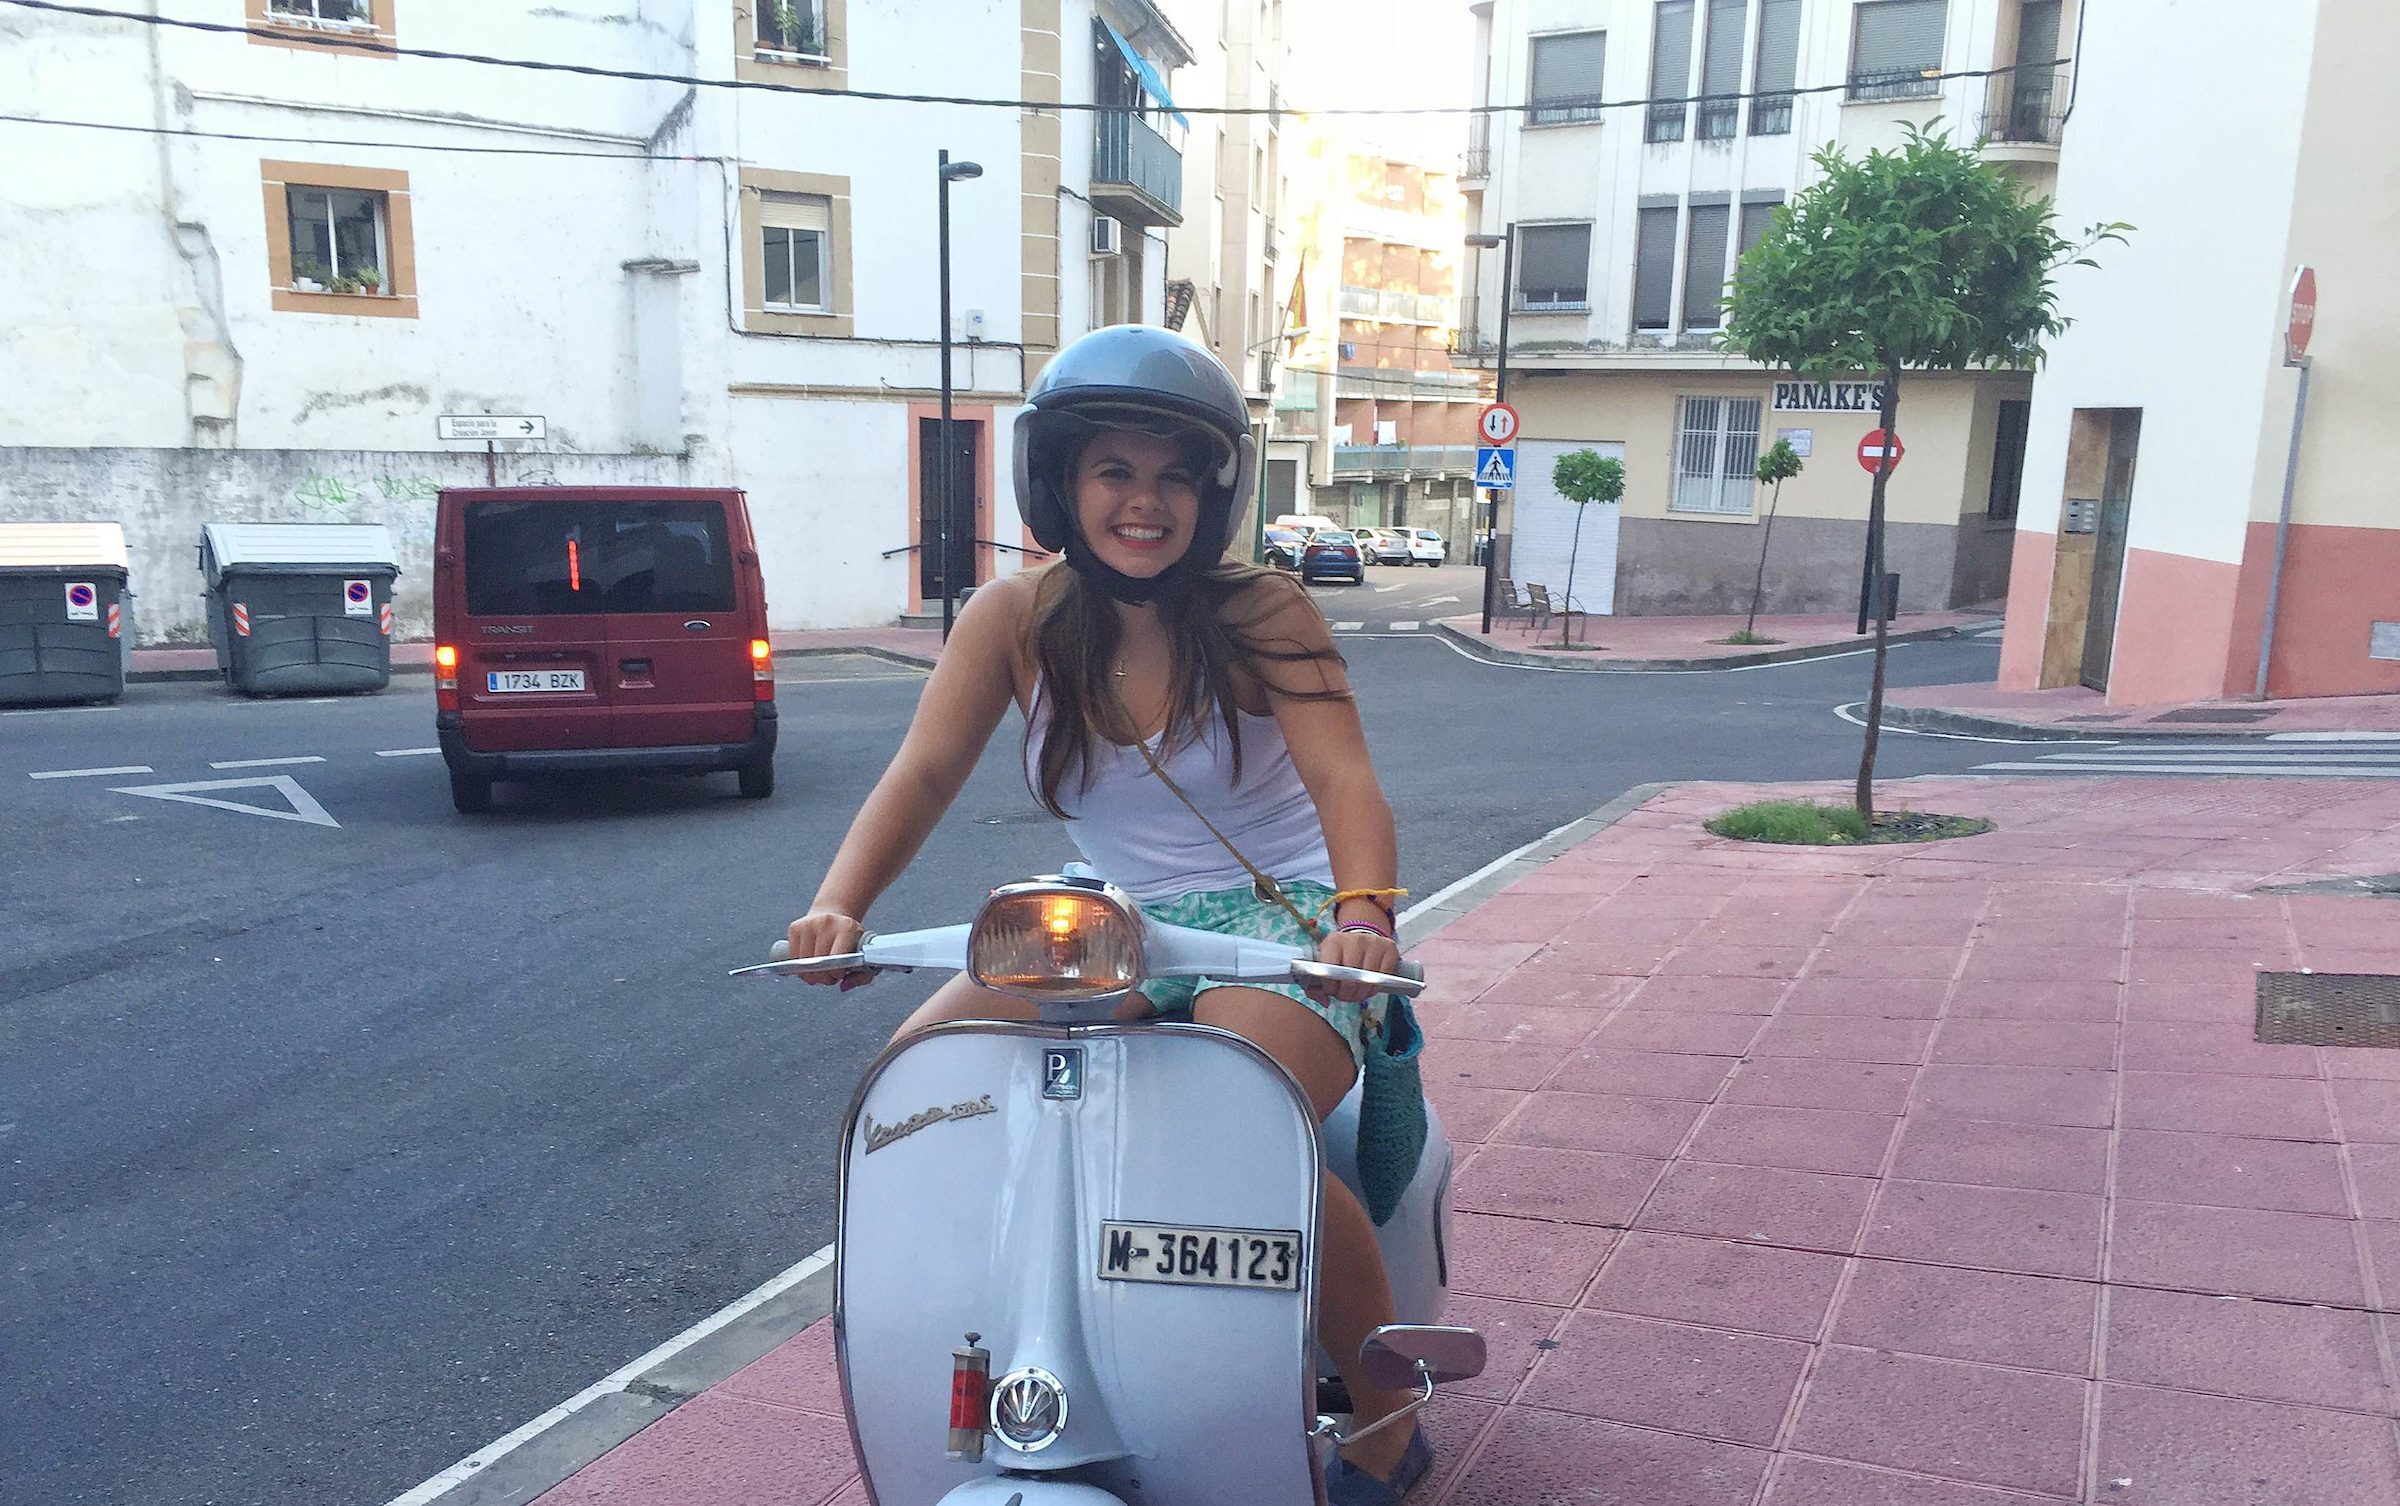 Student on motor bike in Valencia, Spain